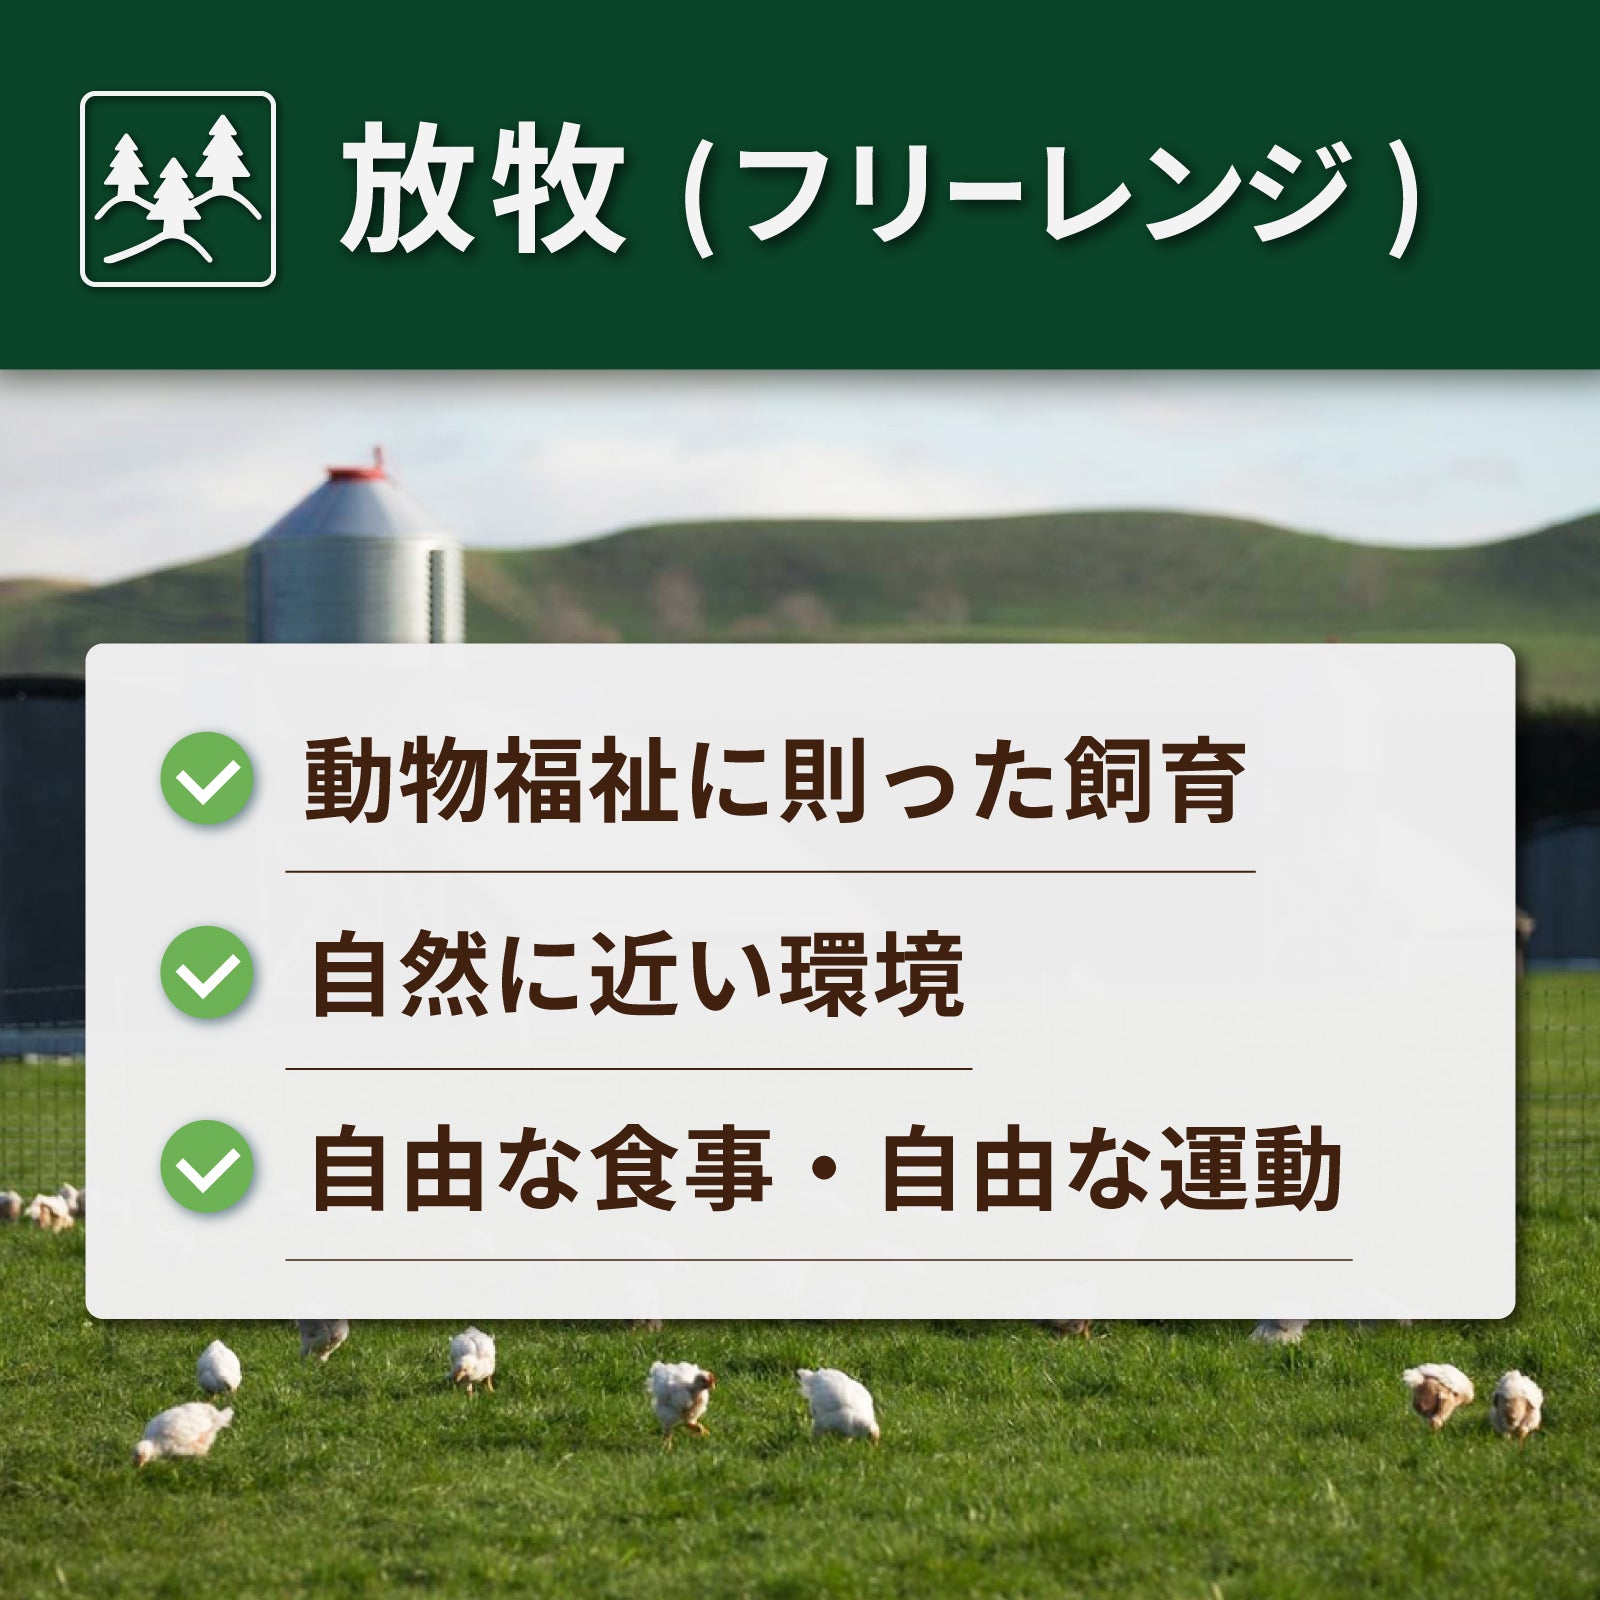 無添加・砂糖不使用 放牧豚 ブレックファスト 生ソーセージ 北海道産 (4本) ホライズンファームズ